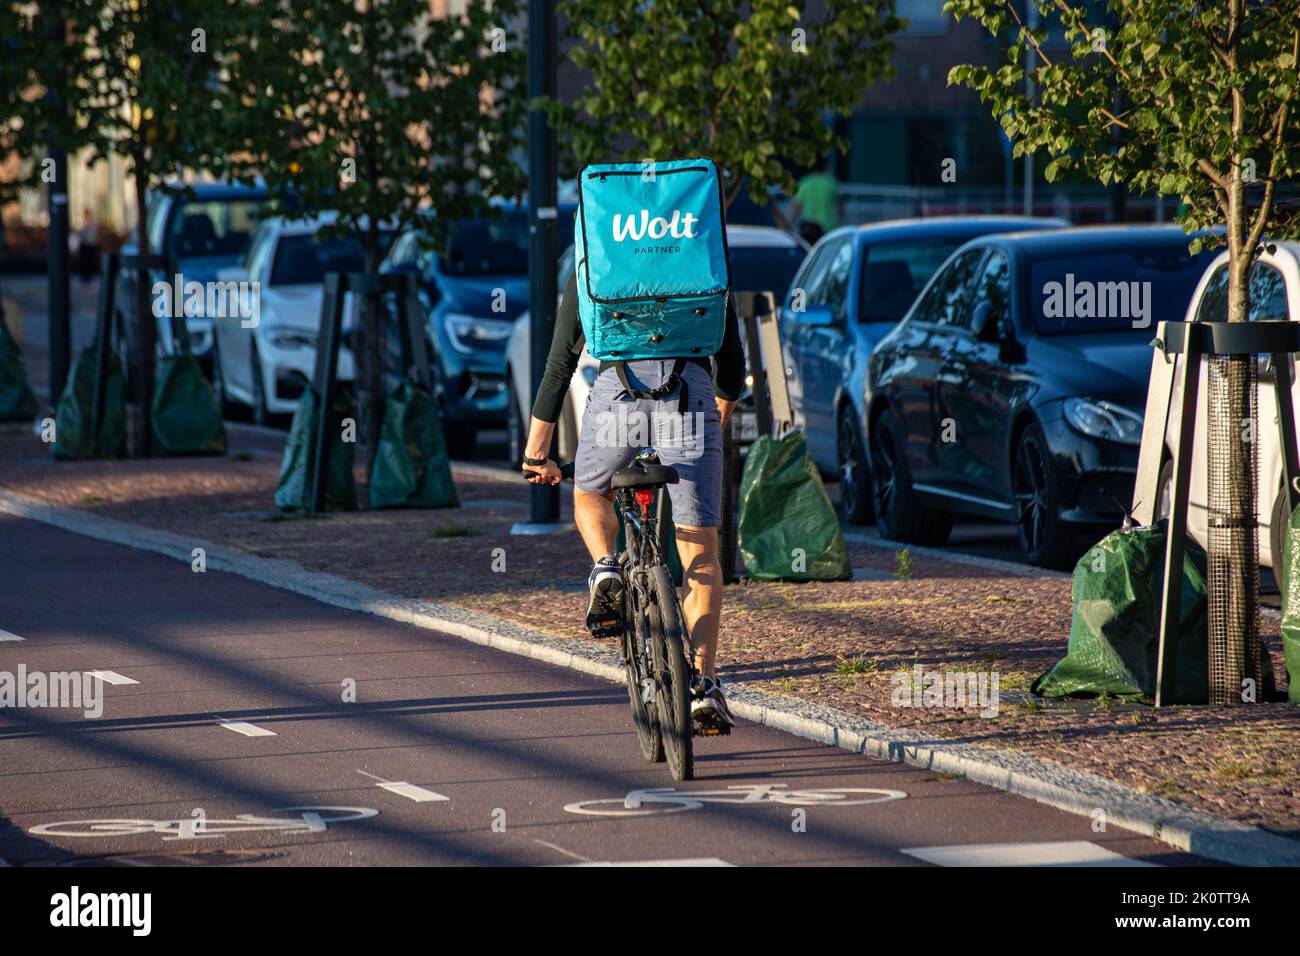 Wolt, un service de messagerie à vélo, travaille à Helsinki, en Finlande Banque D'Images